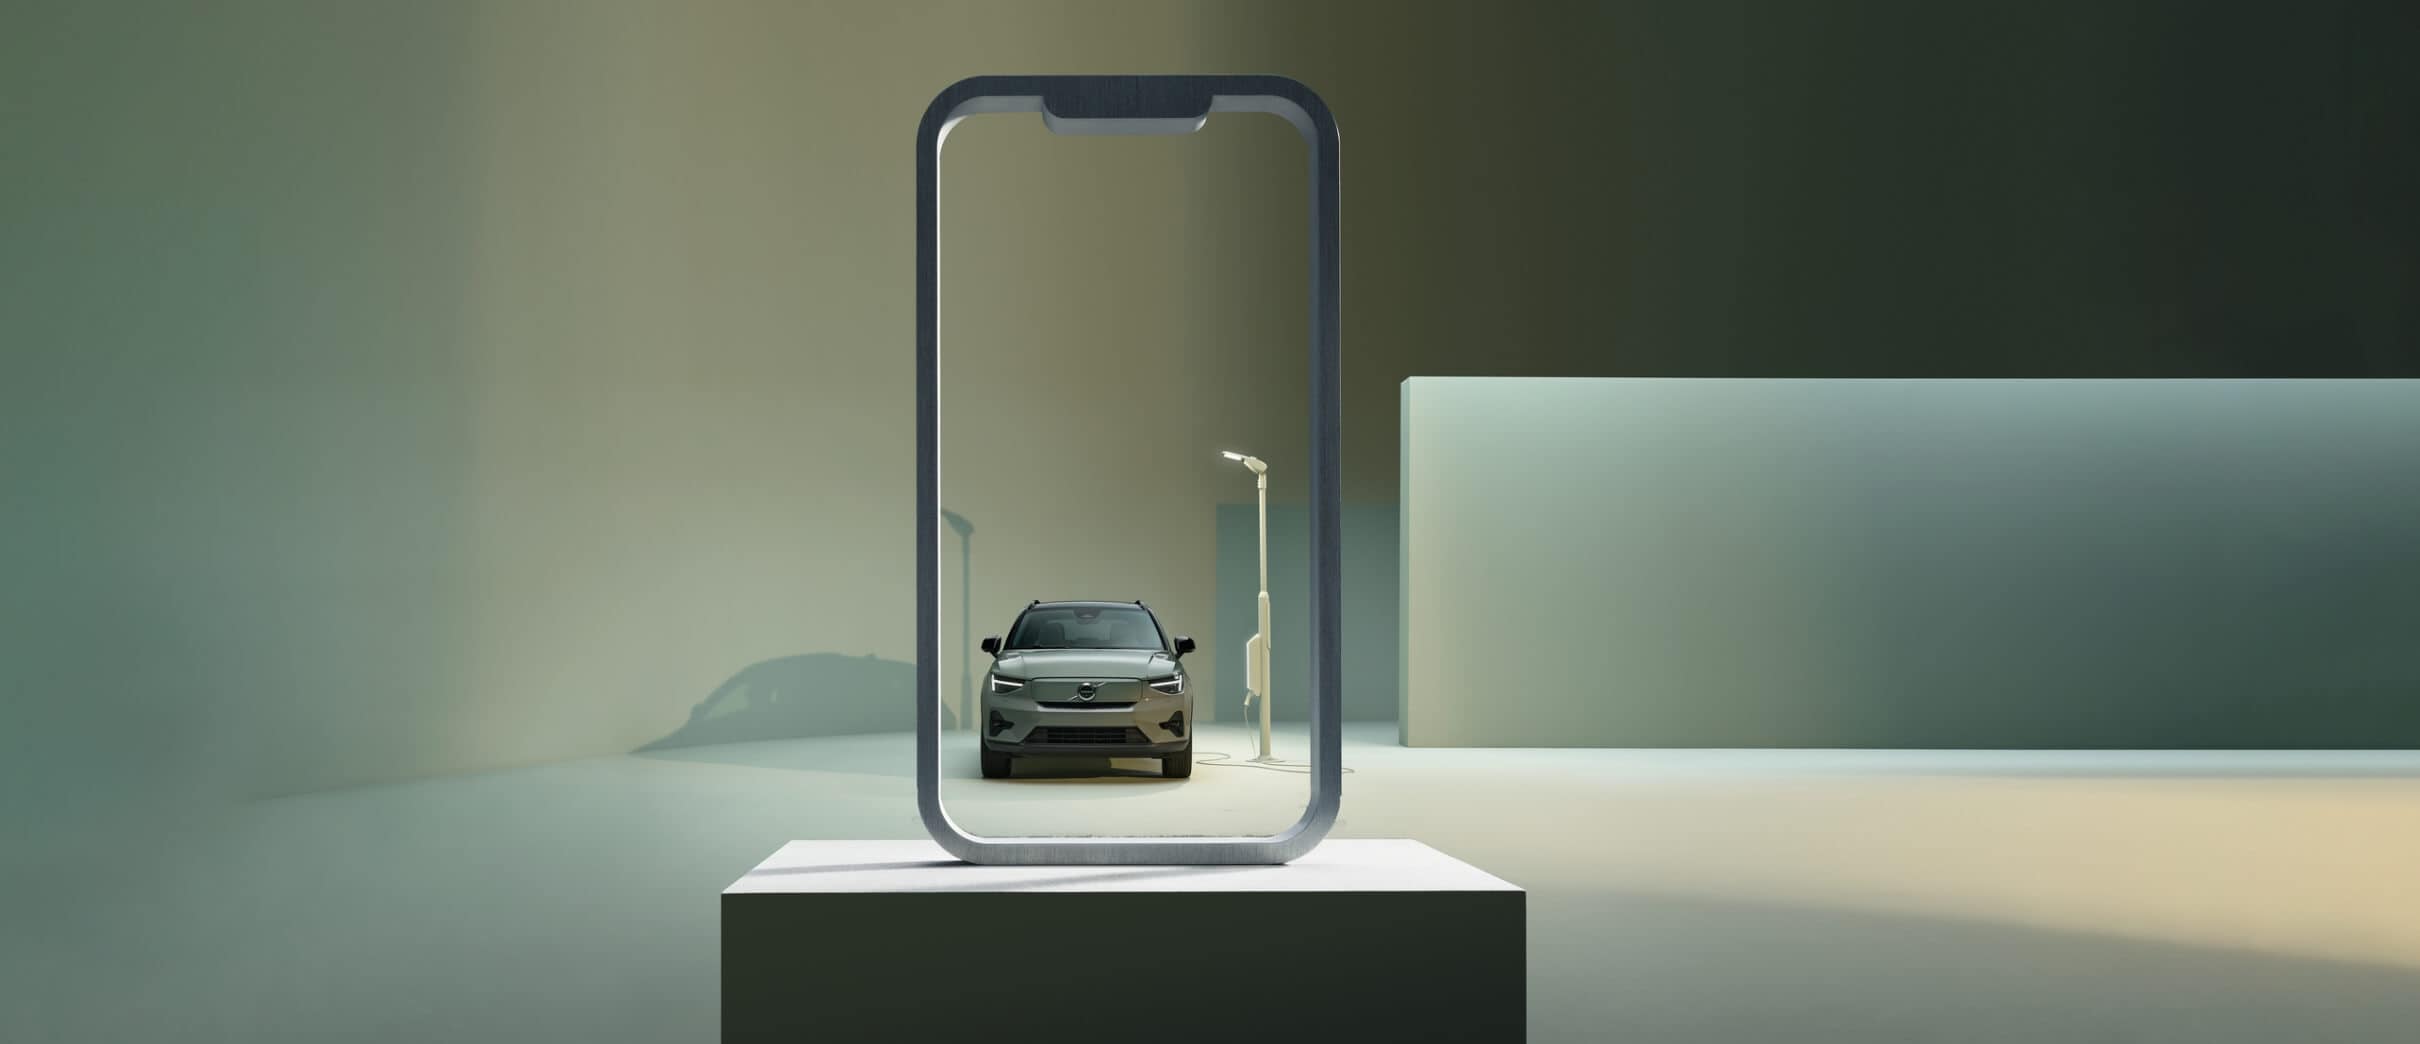 Ein Volvo Fahrzeug wird auf dem Display eines Handys angezeigt. 